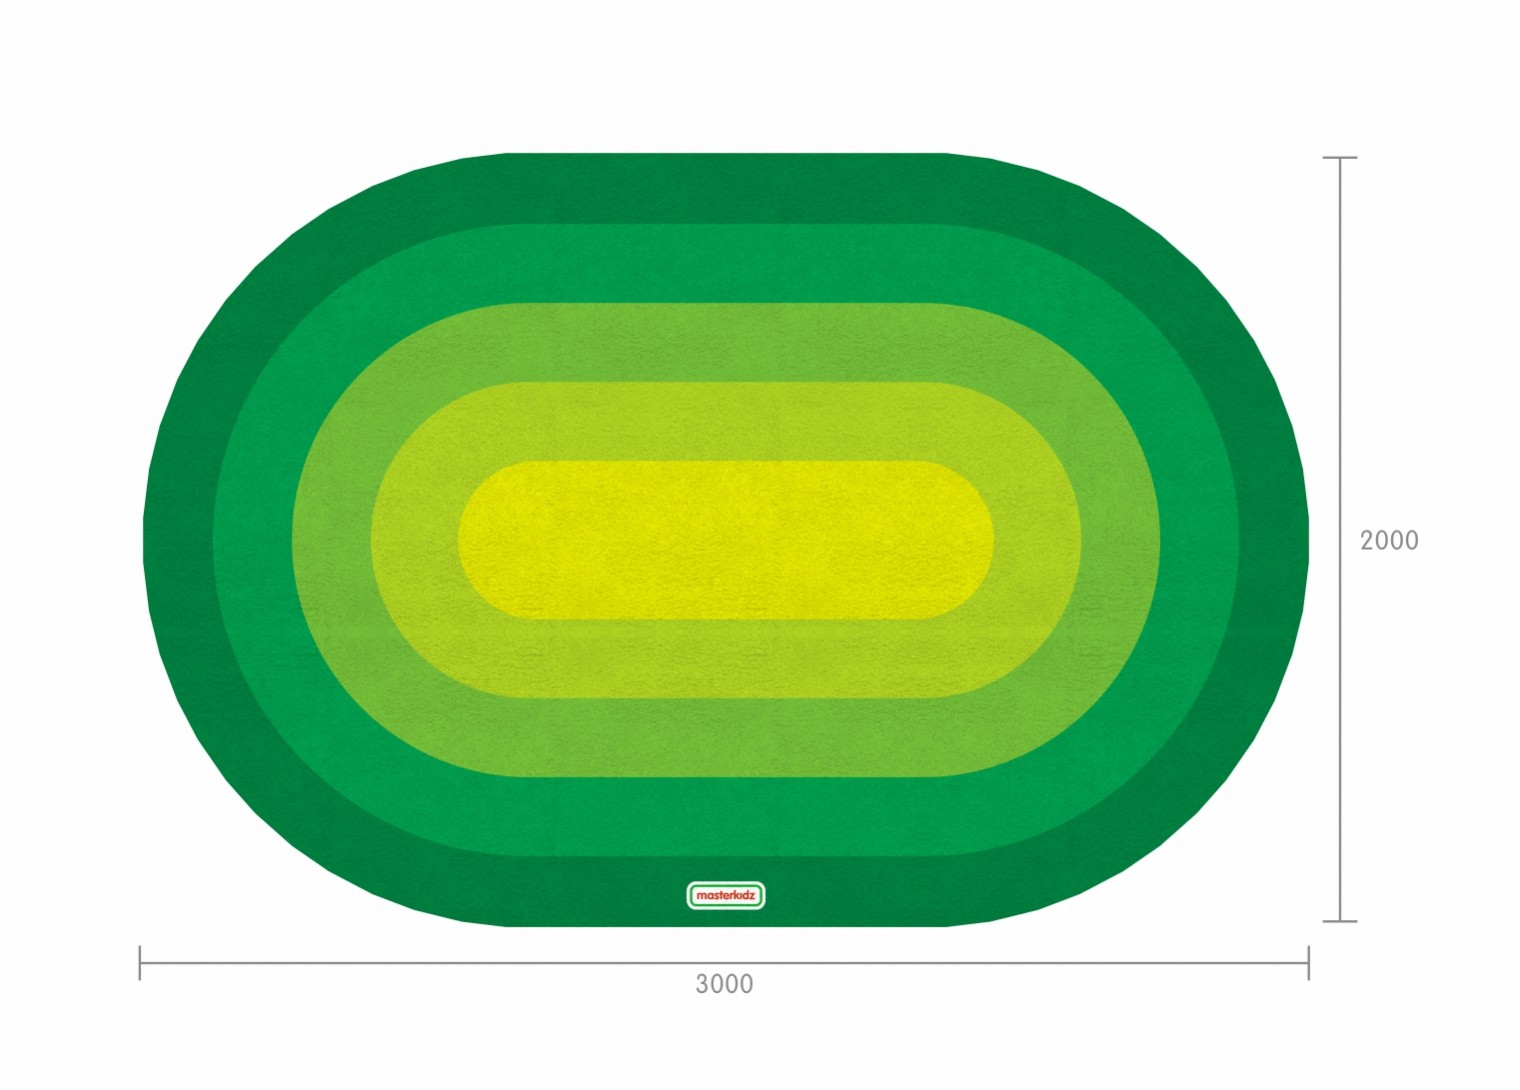 3000L Oval-Shaped Classroom Rug(Green) - 3000L x 2000W